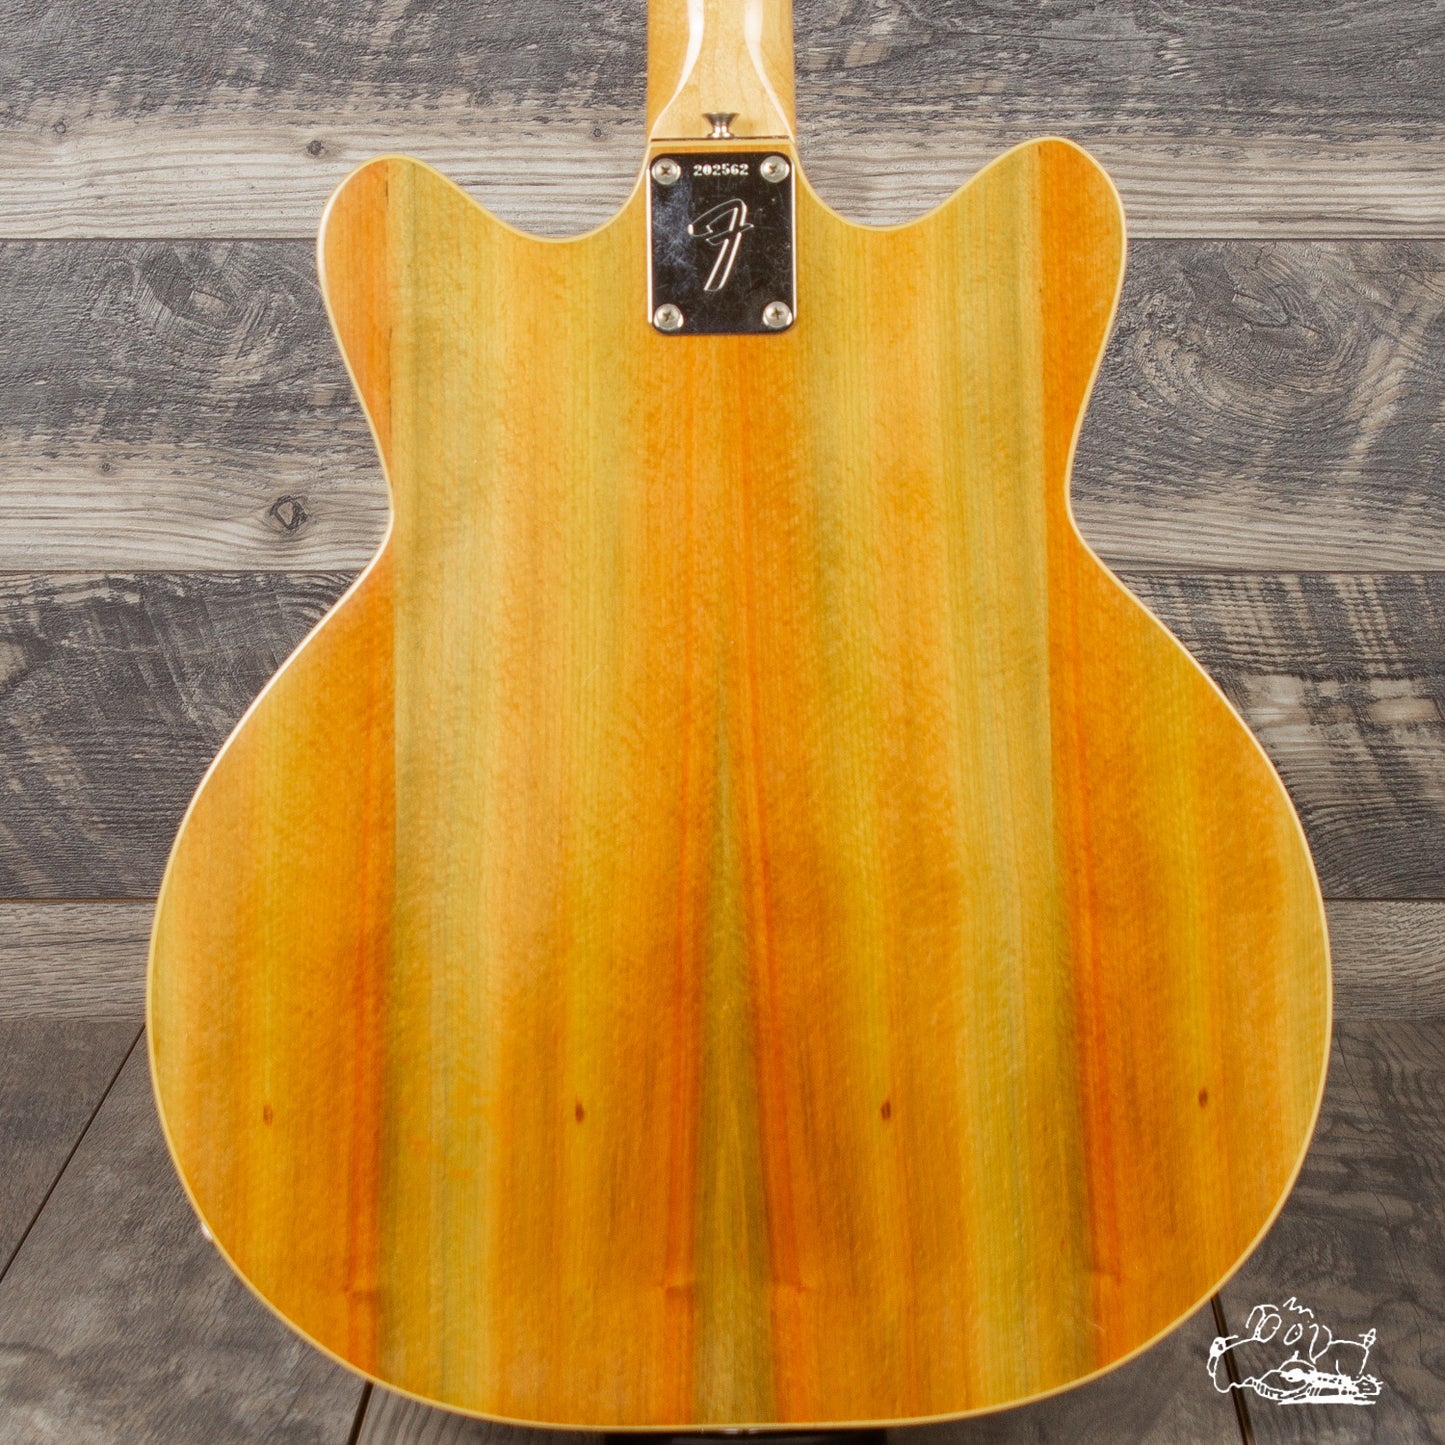 1967 Fender Coronado Wildwood I